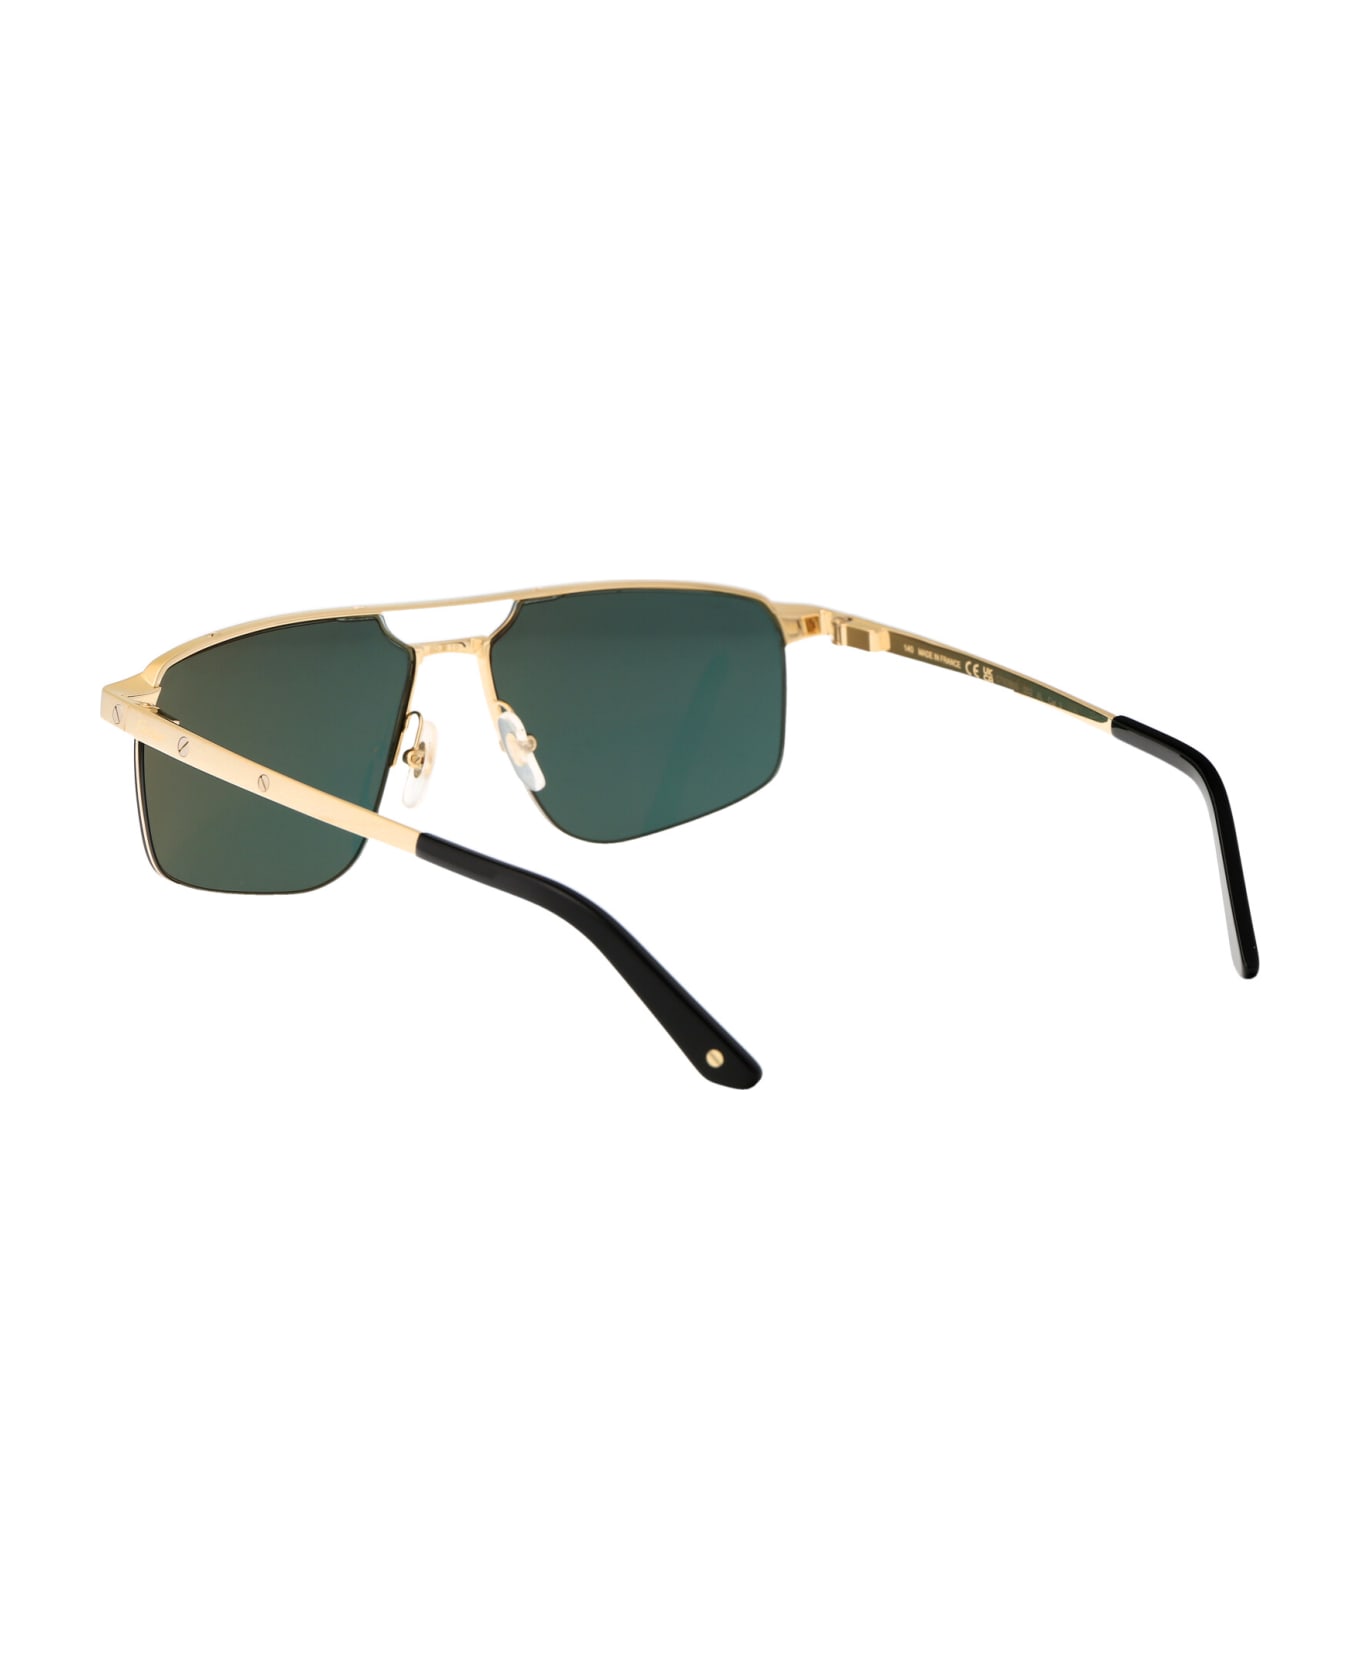 Cartier Eyewear Ct0385s Sunglasses - 002 GOLD GOLD GREEN